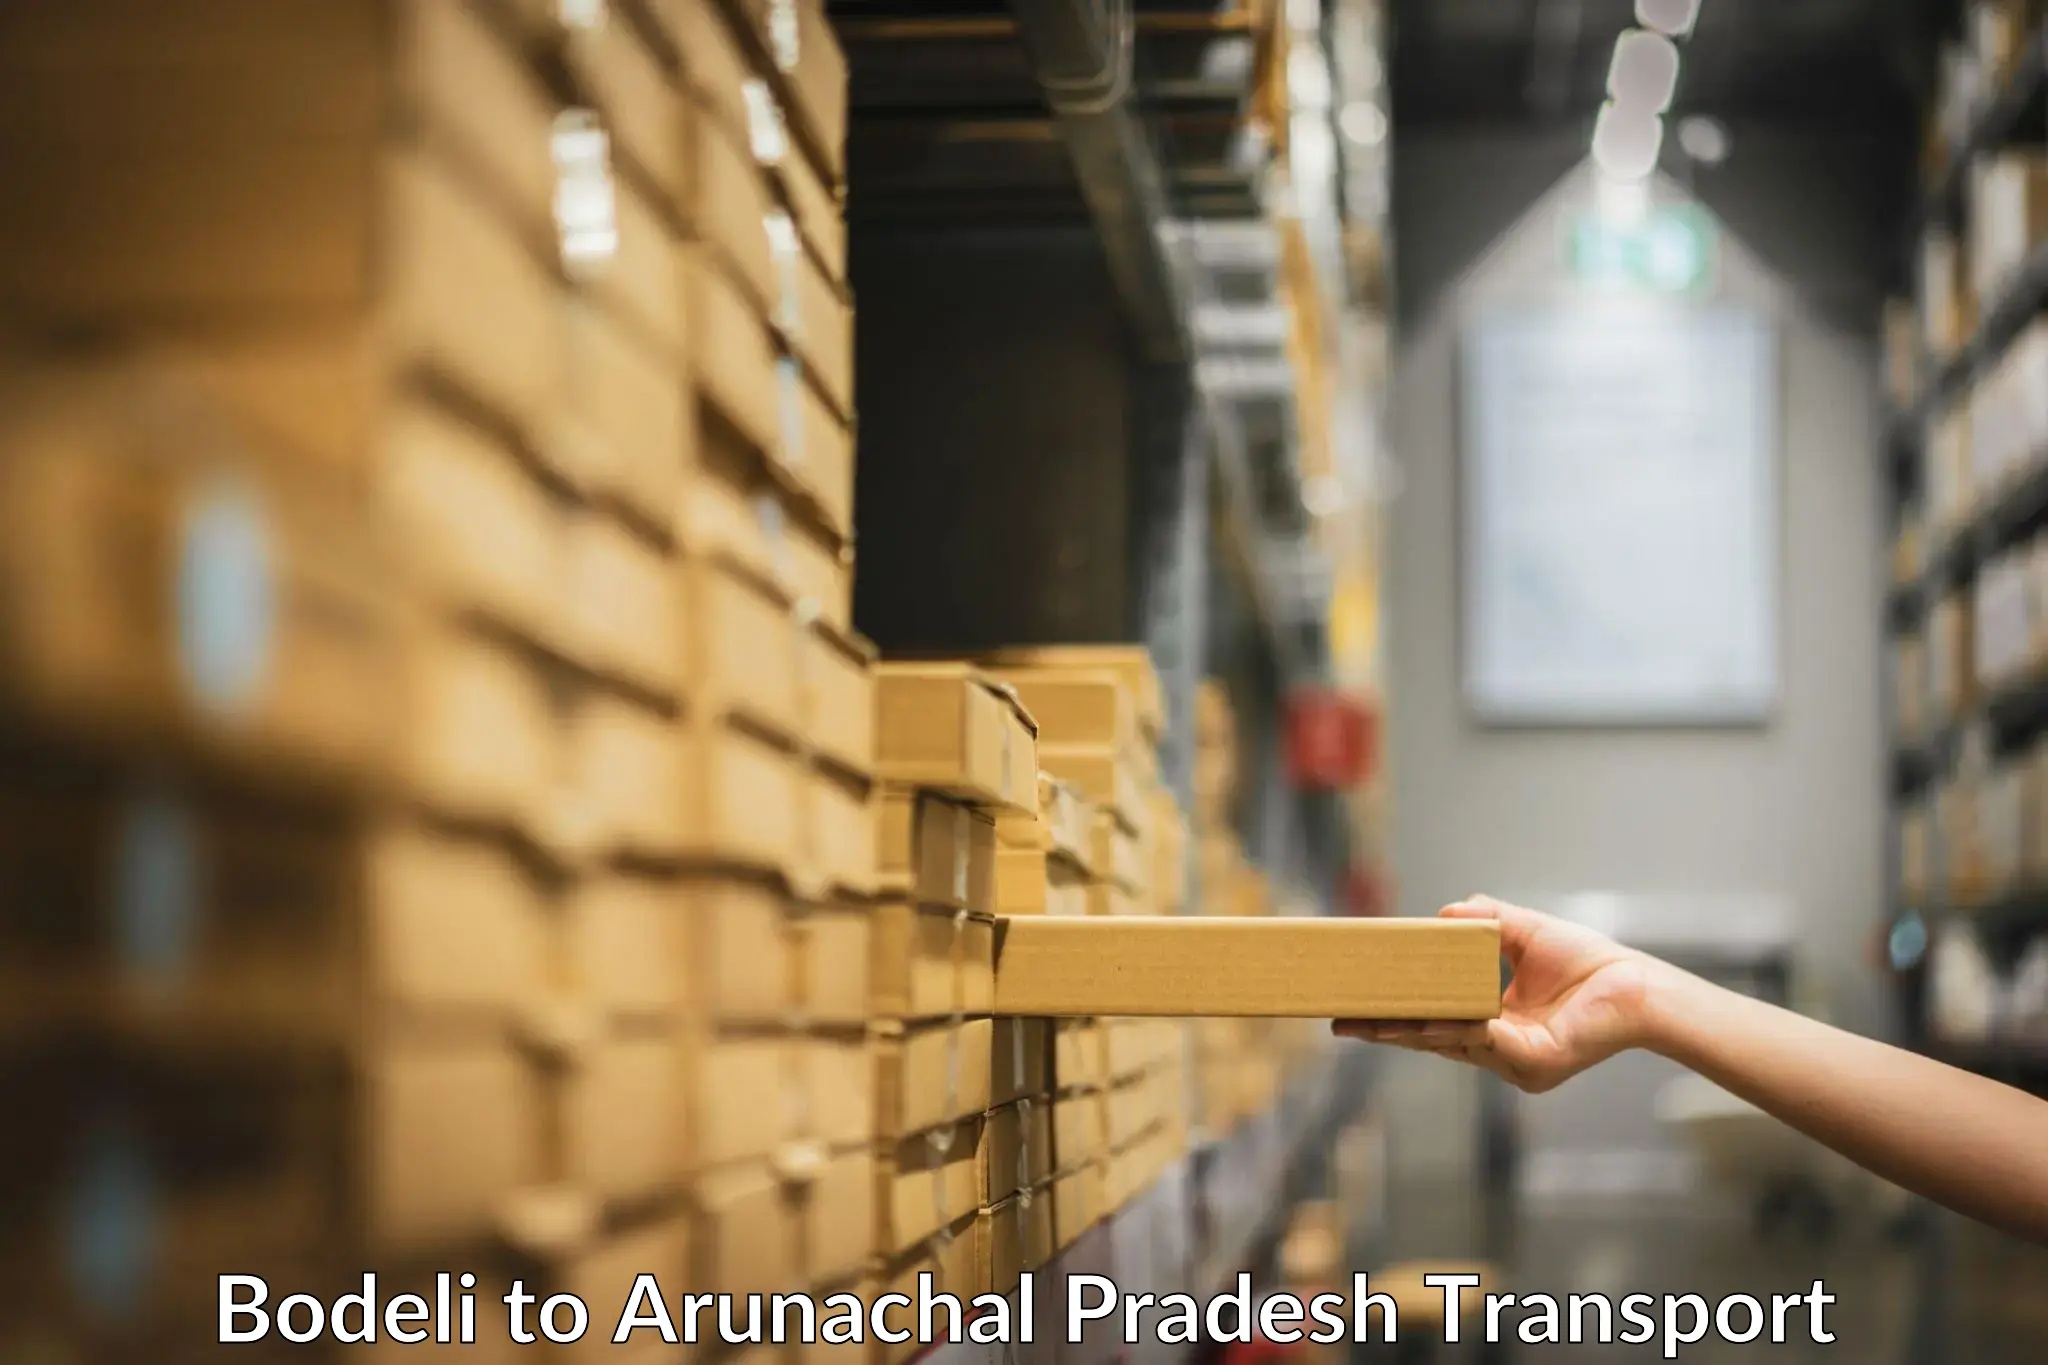 Nearest transport service Bodeli to Arunachal Pradesh